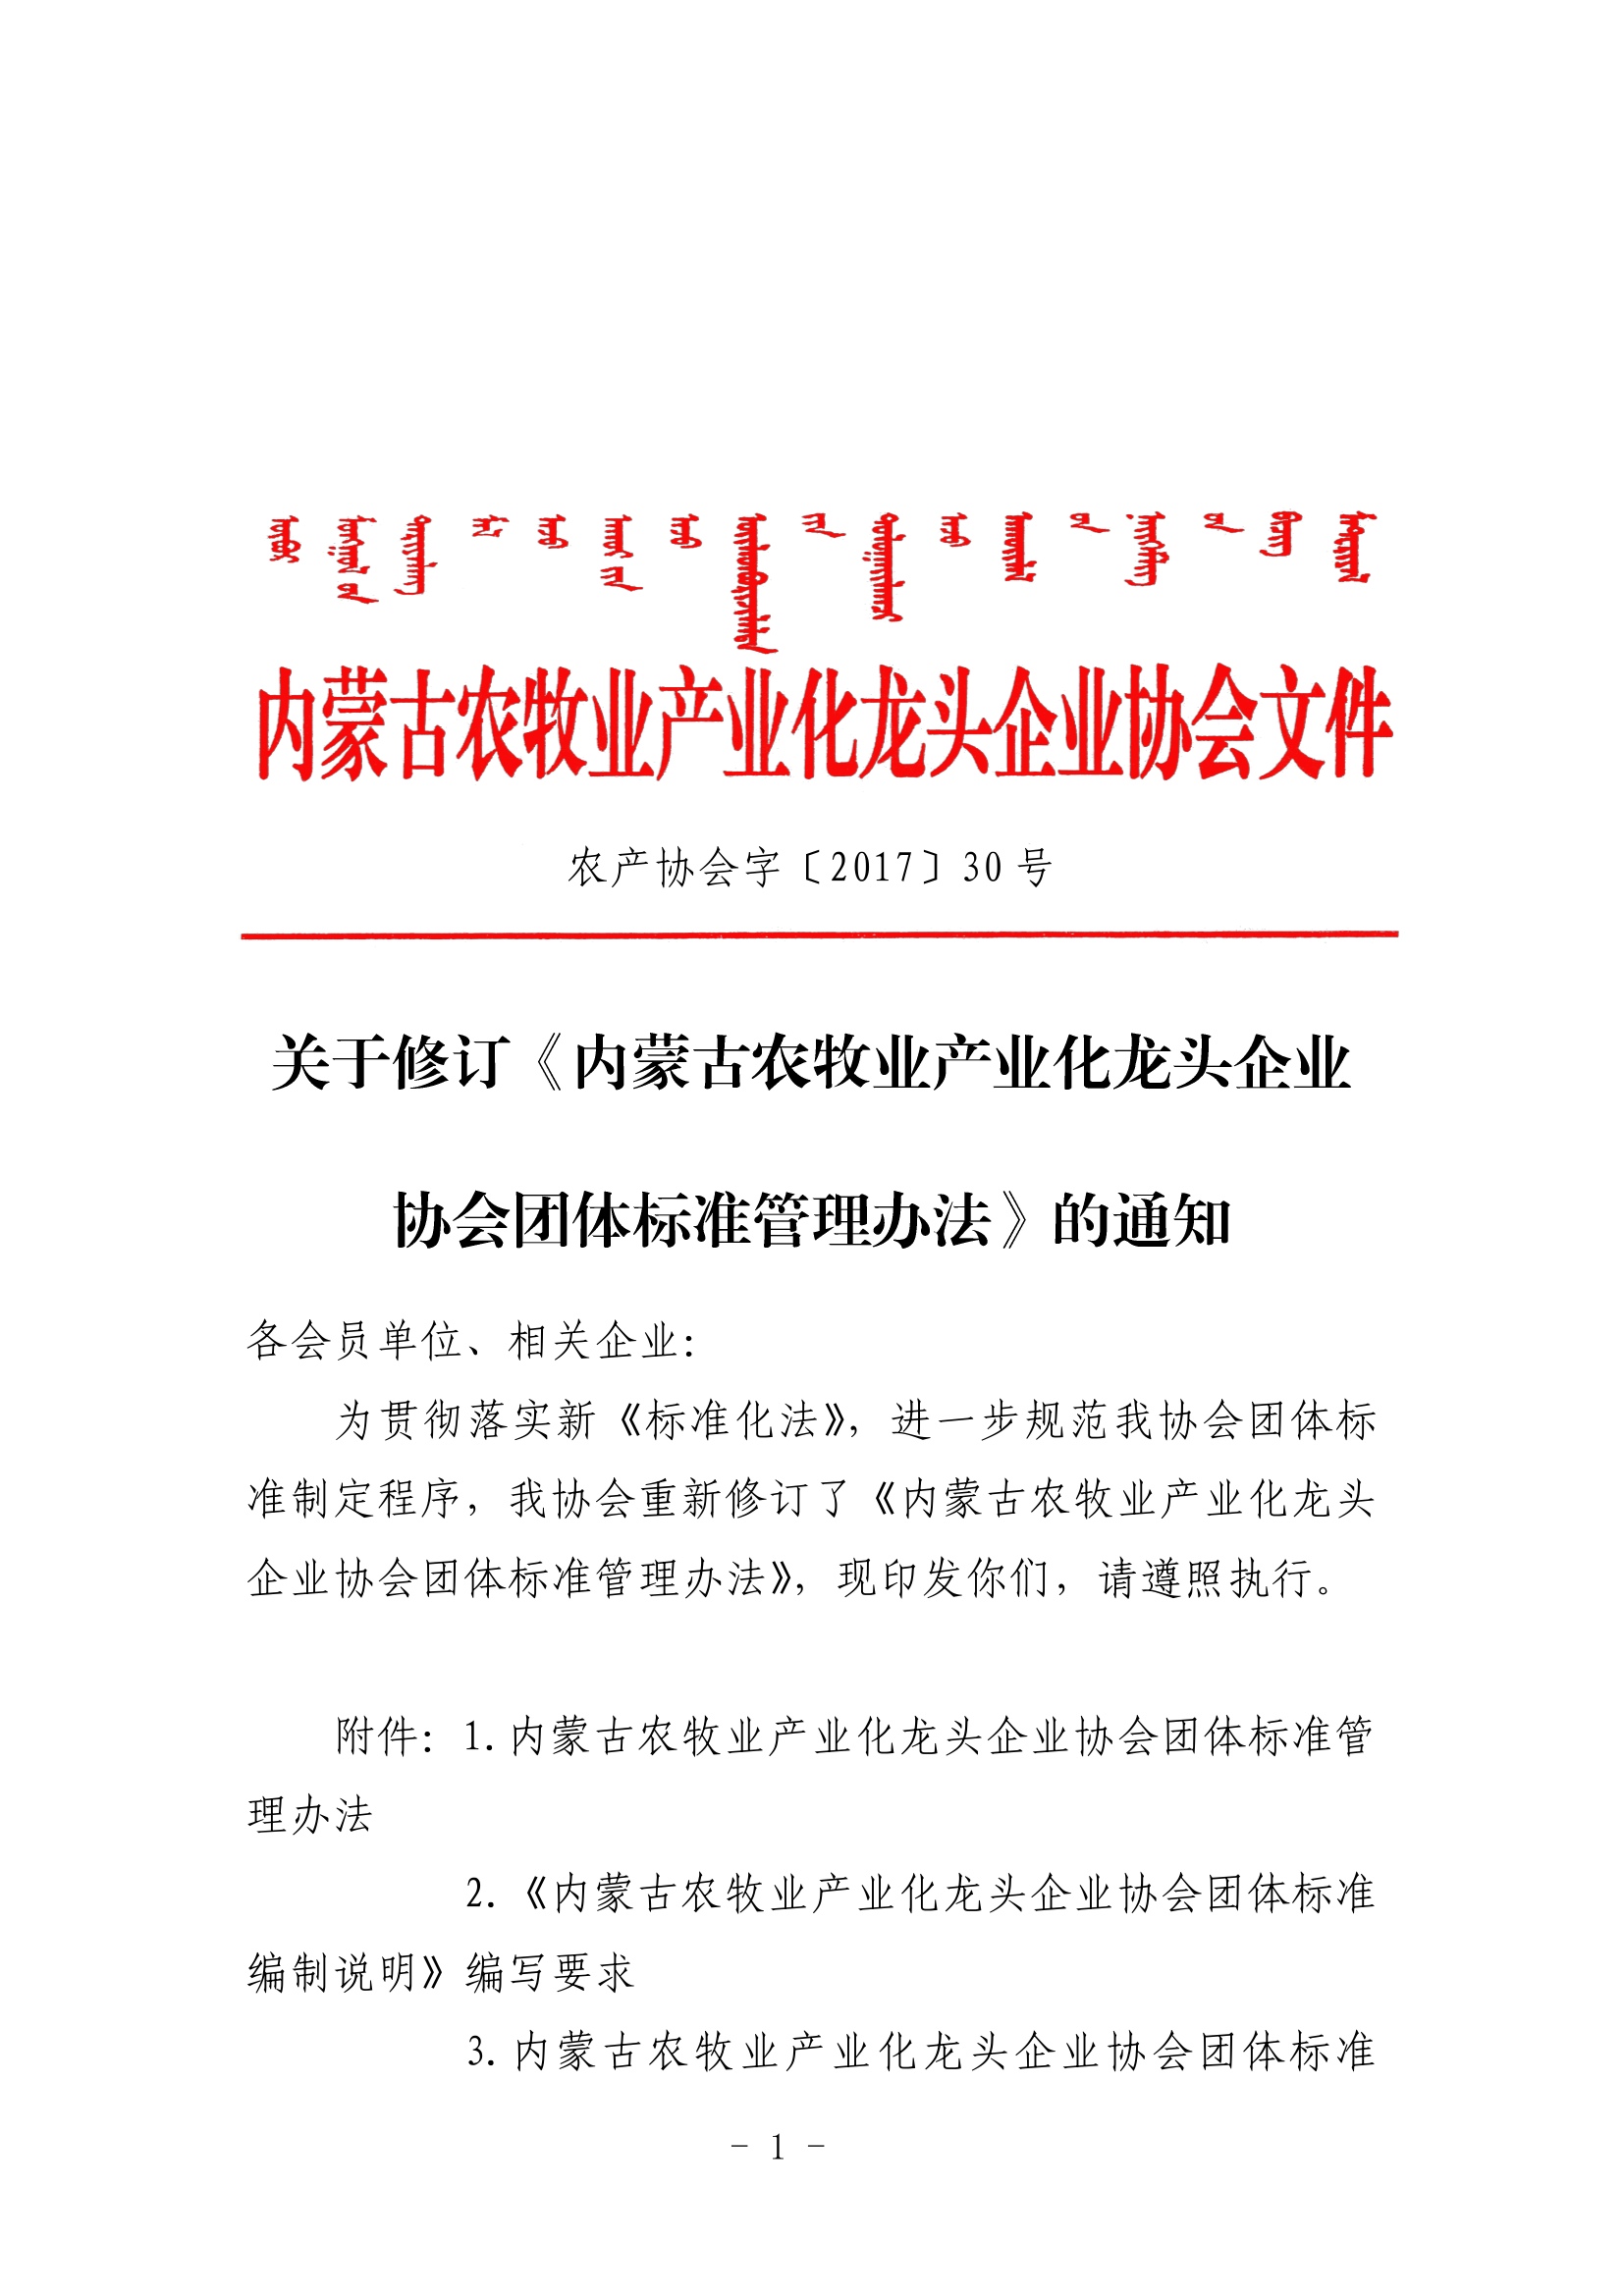 关于修订《米乐M6(中国)官方网站农牧业产业化龙头企业米乐团体标准管理办法》的通知